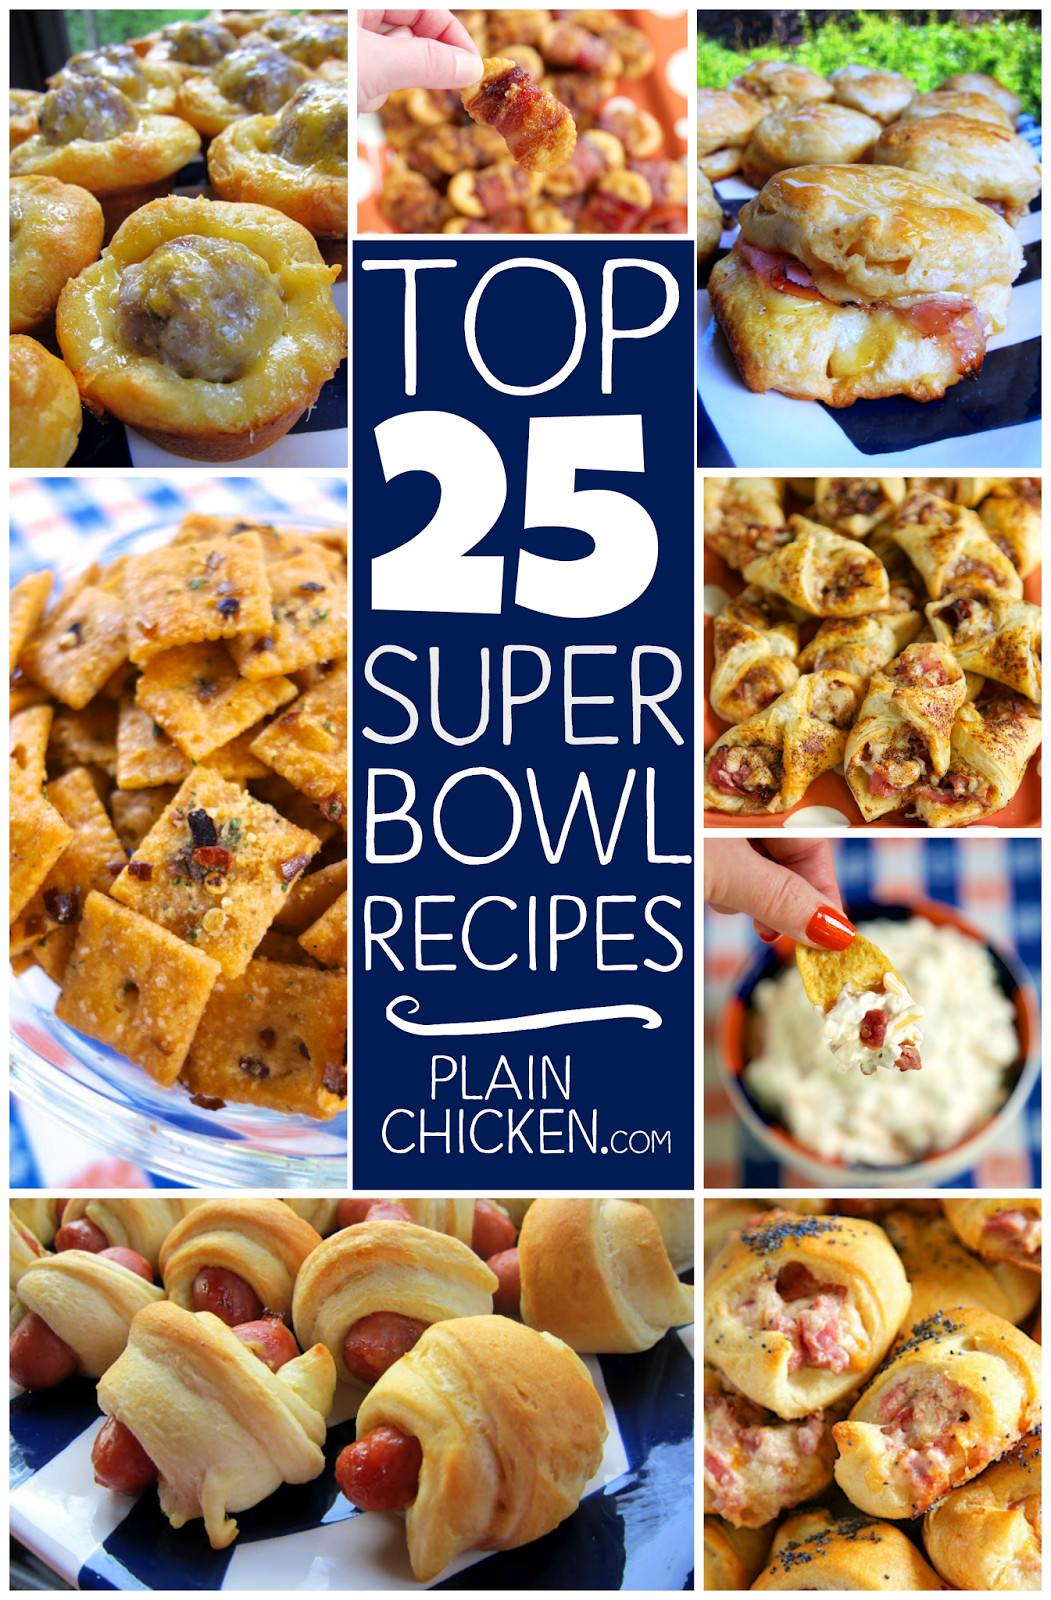 Best Super Bowl Party Recipes
 Top 25 Super Bowl Recipes